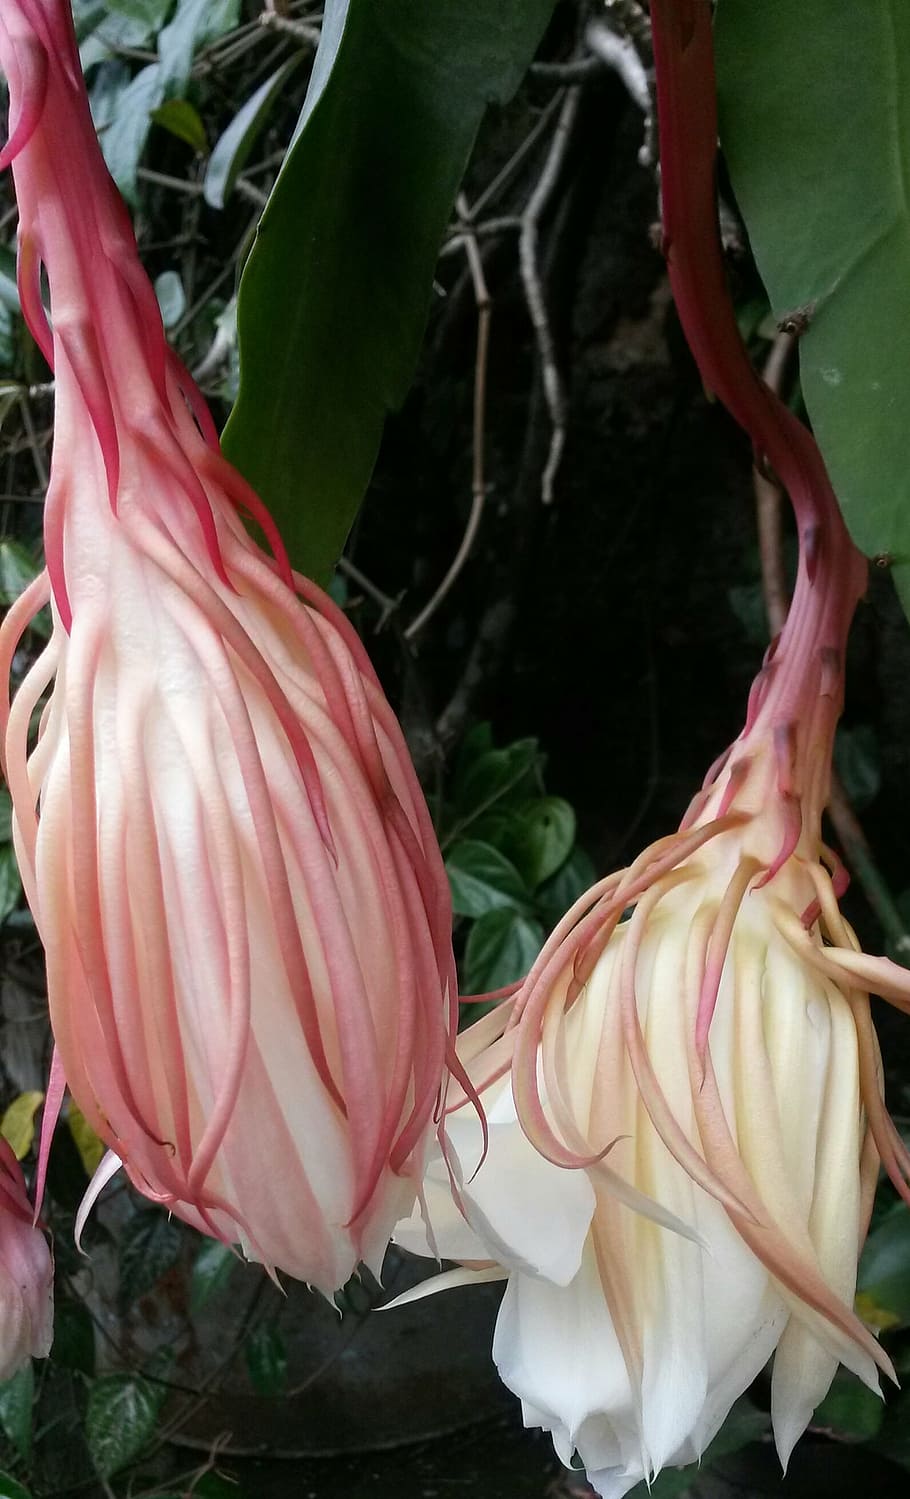 epiphyllum anguliger, flor, epiphyllum, raro, wijaya kusuma, javanese, indonesia, naturaleza, tropical, natural